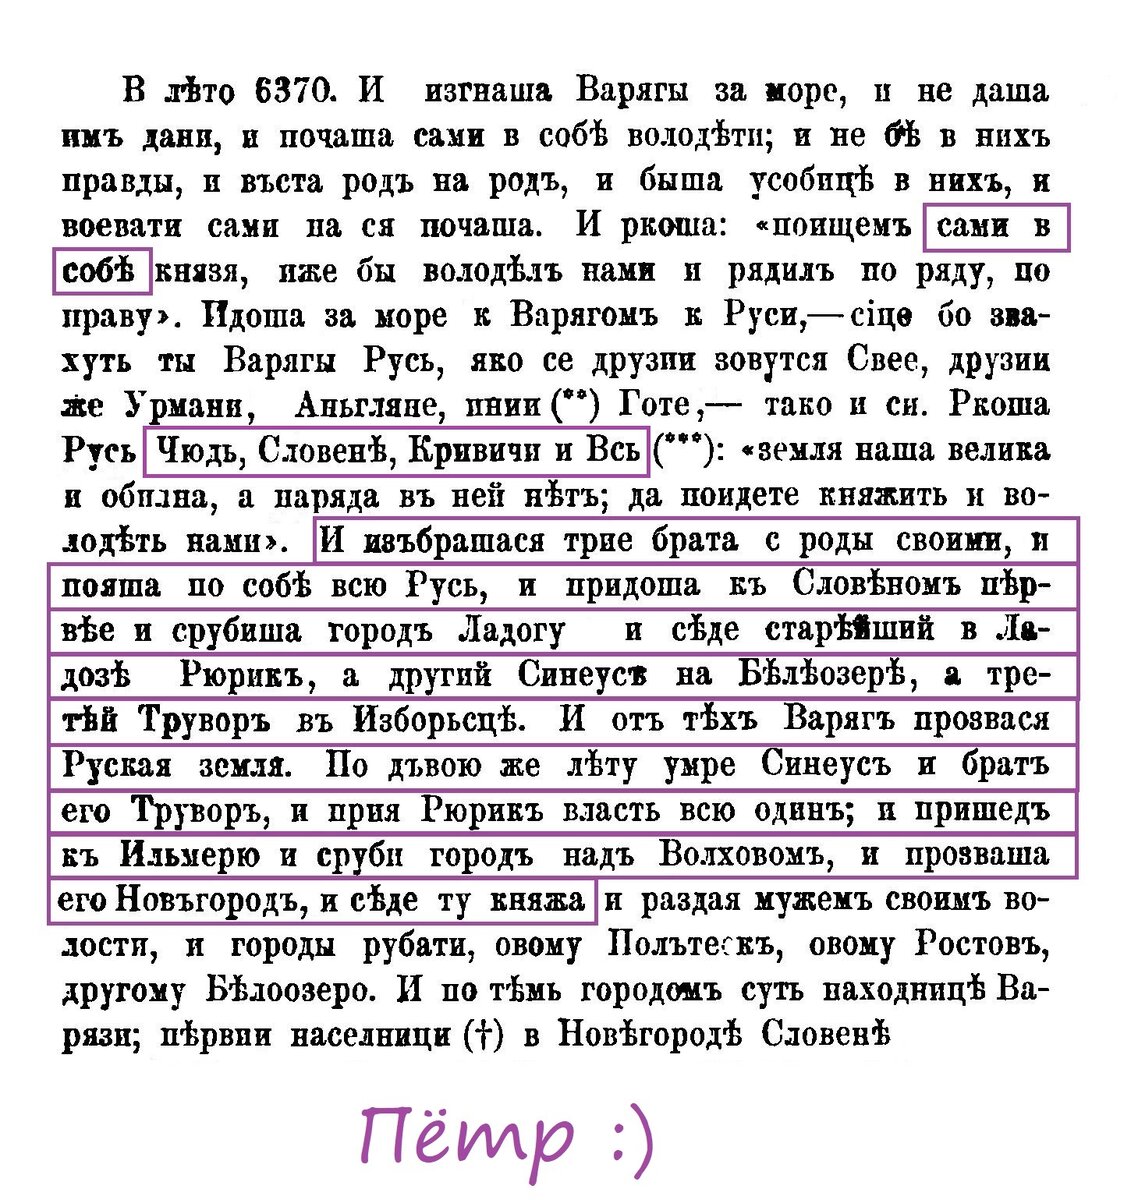 Скриншот Ипатьевской летописи взят из открытого источника